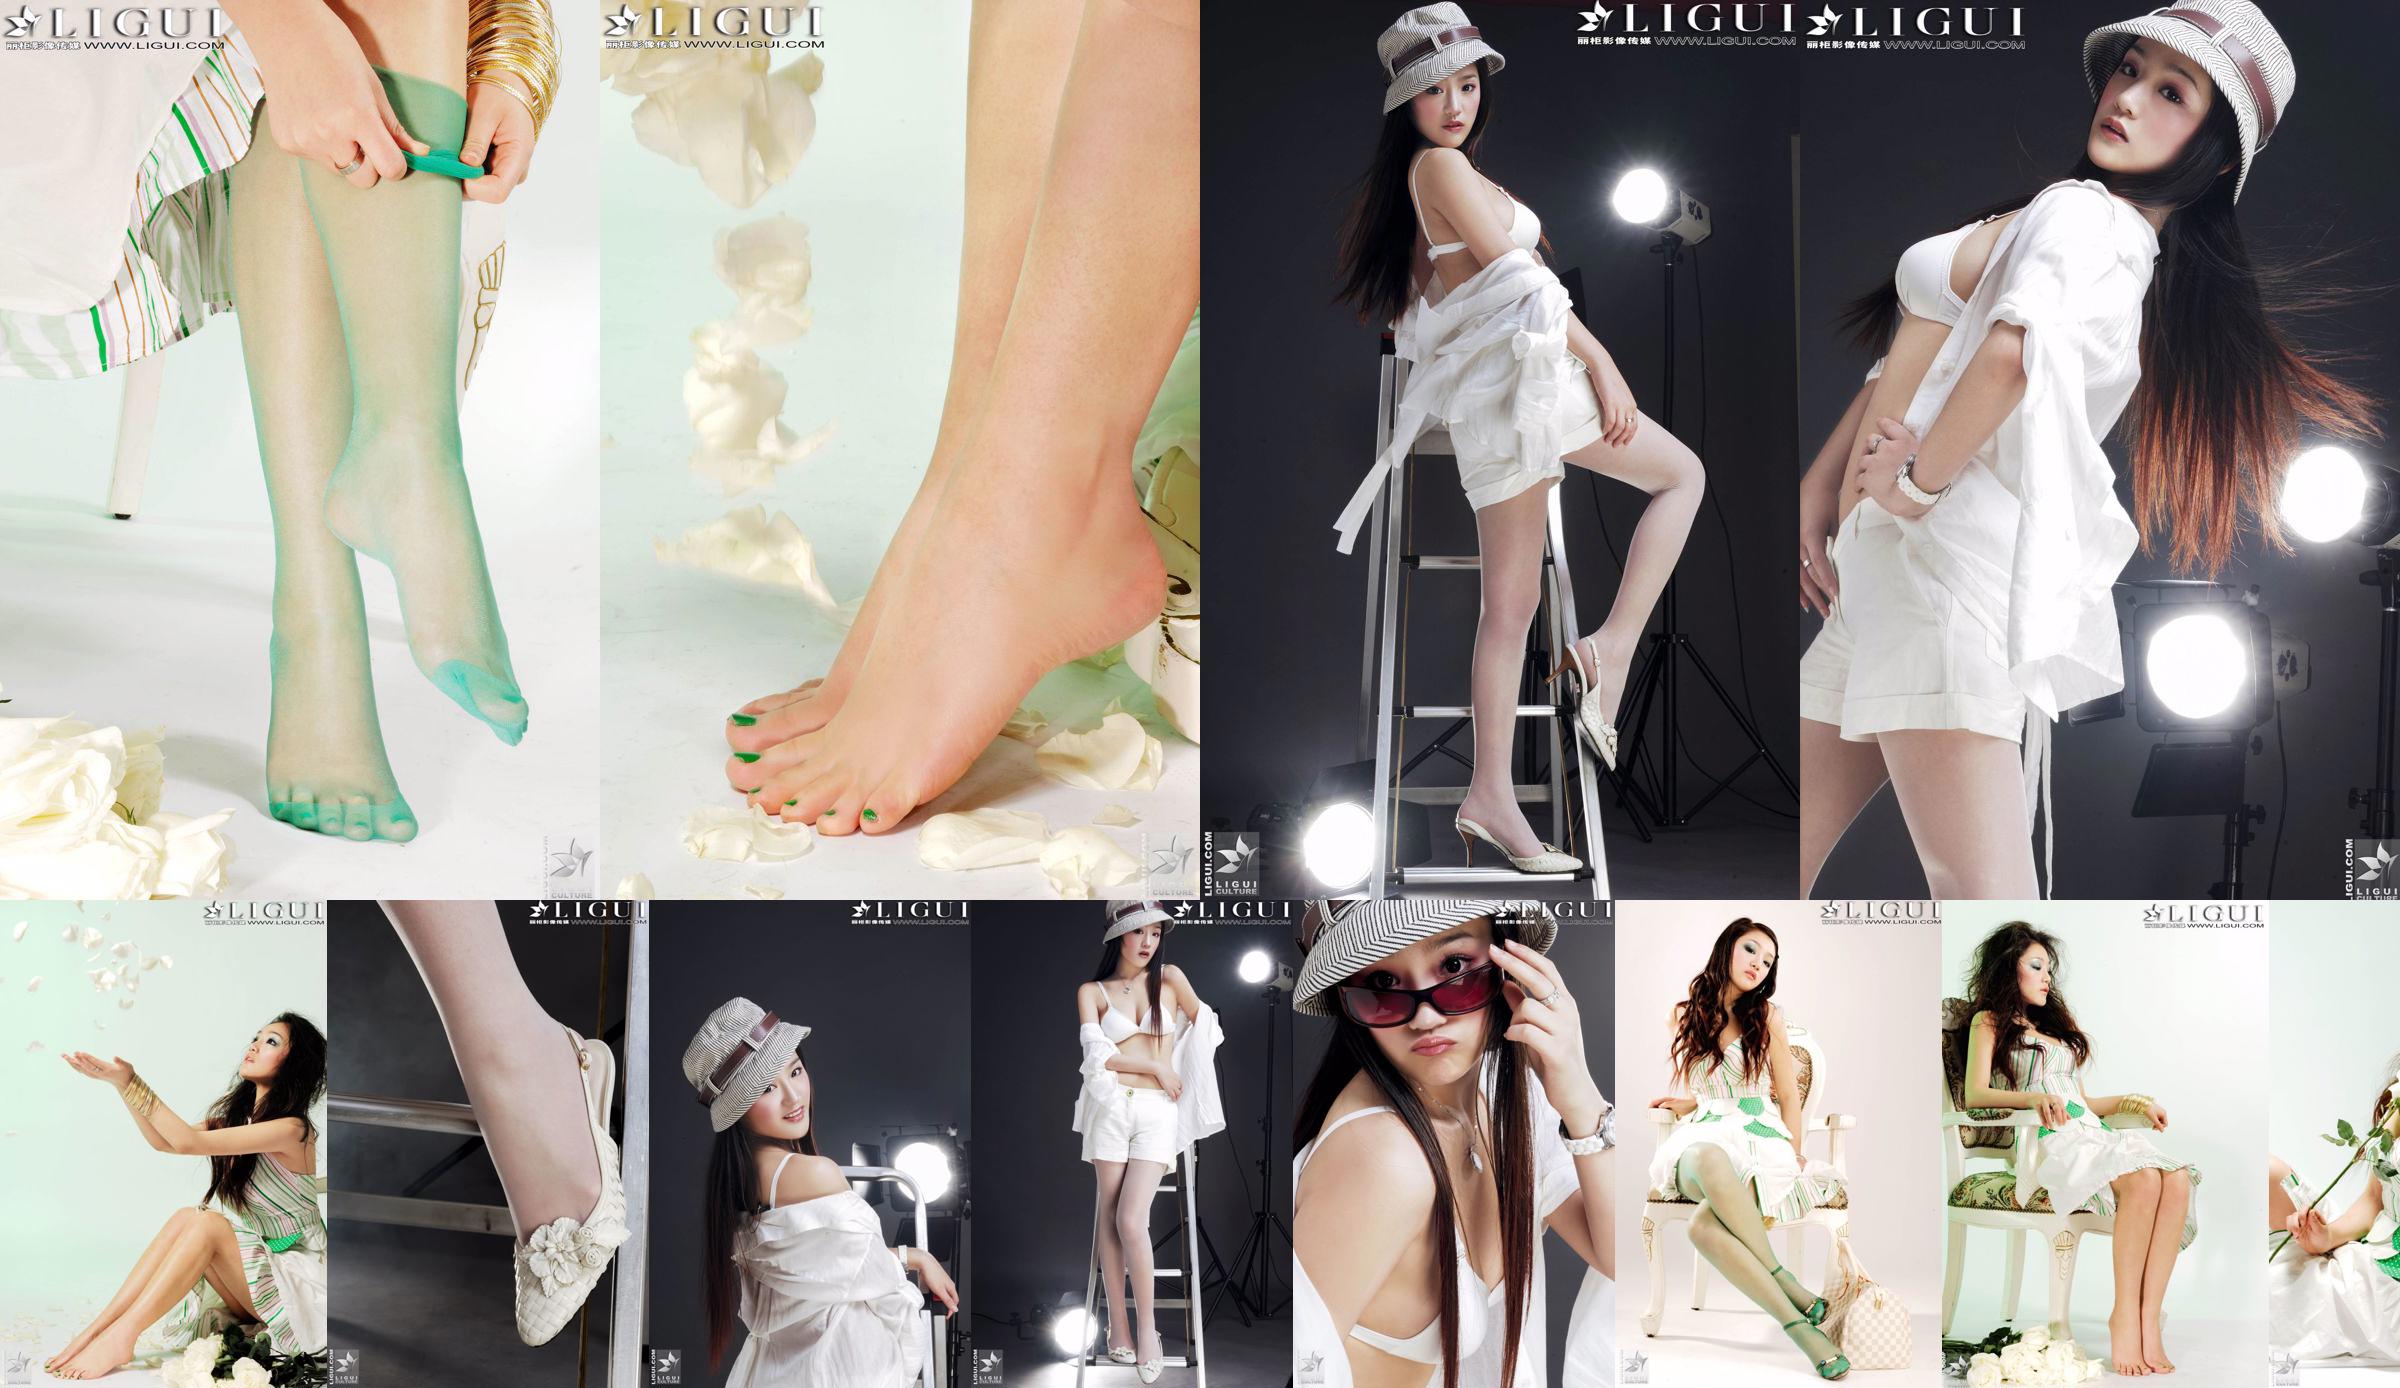 [丽柜贵足LiGui] Model Zhang Jingyan's "Fashionable Foot" photo of beautiful legs and silk feet No.4f7335 Page 1